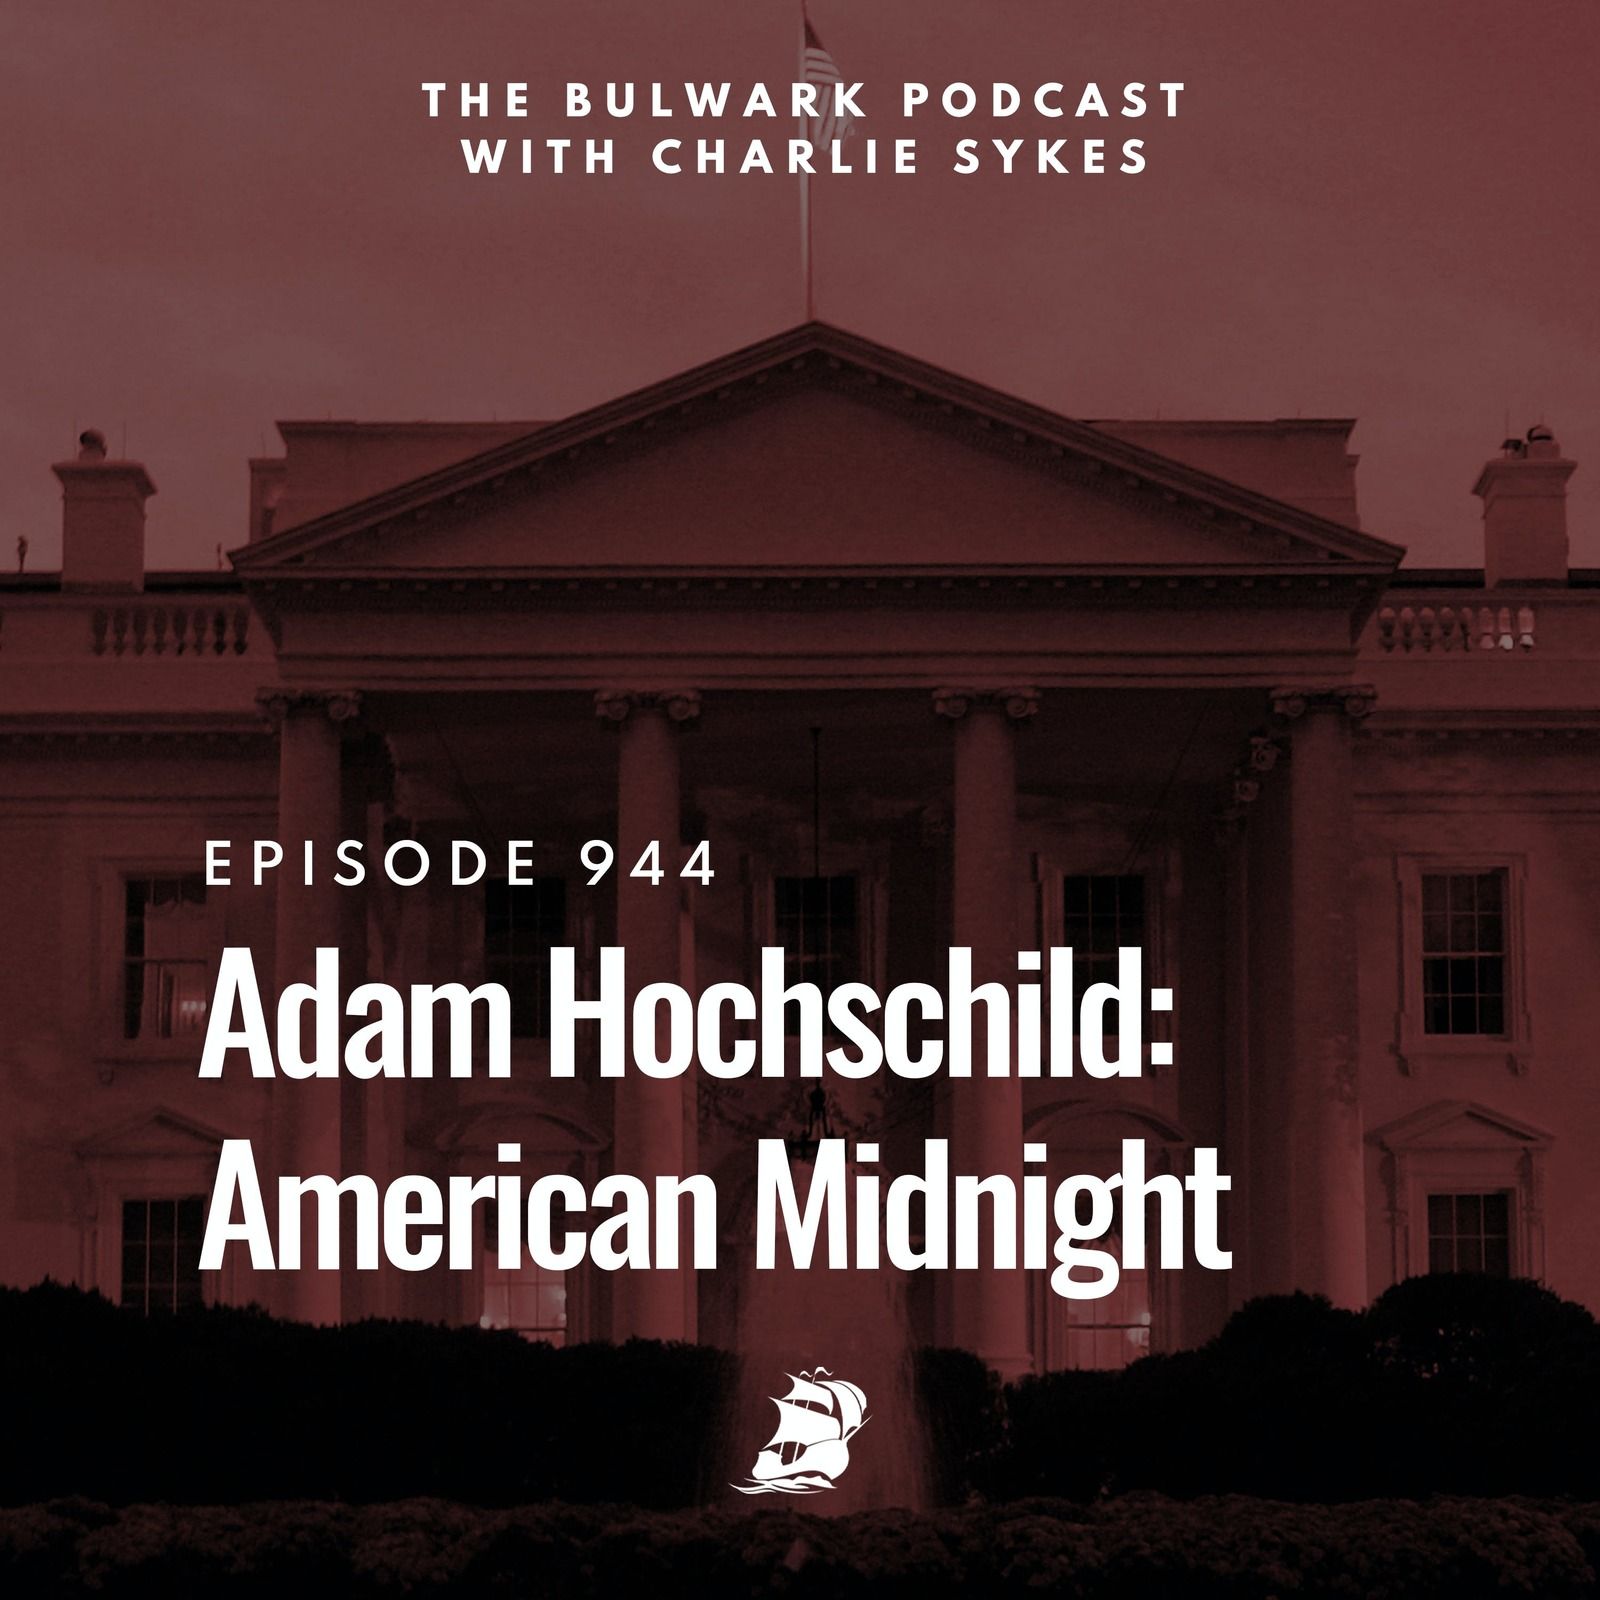 Adam Hochschild: American Midnight